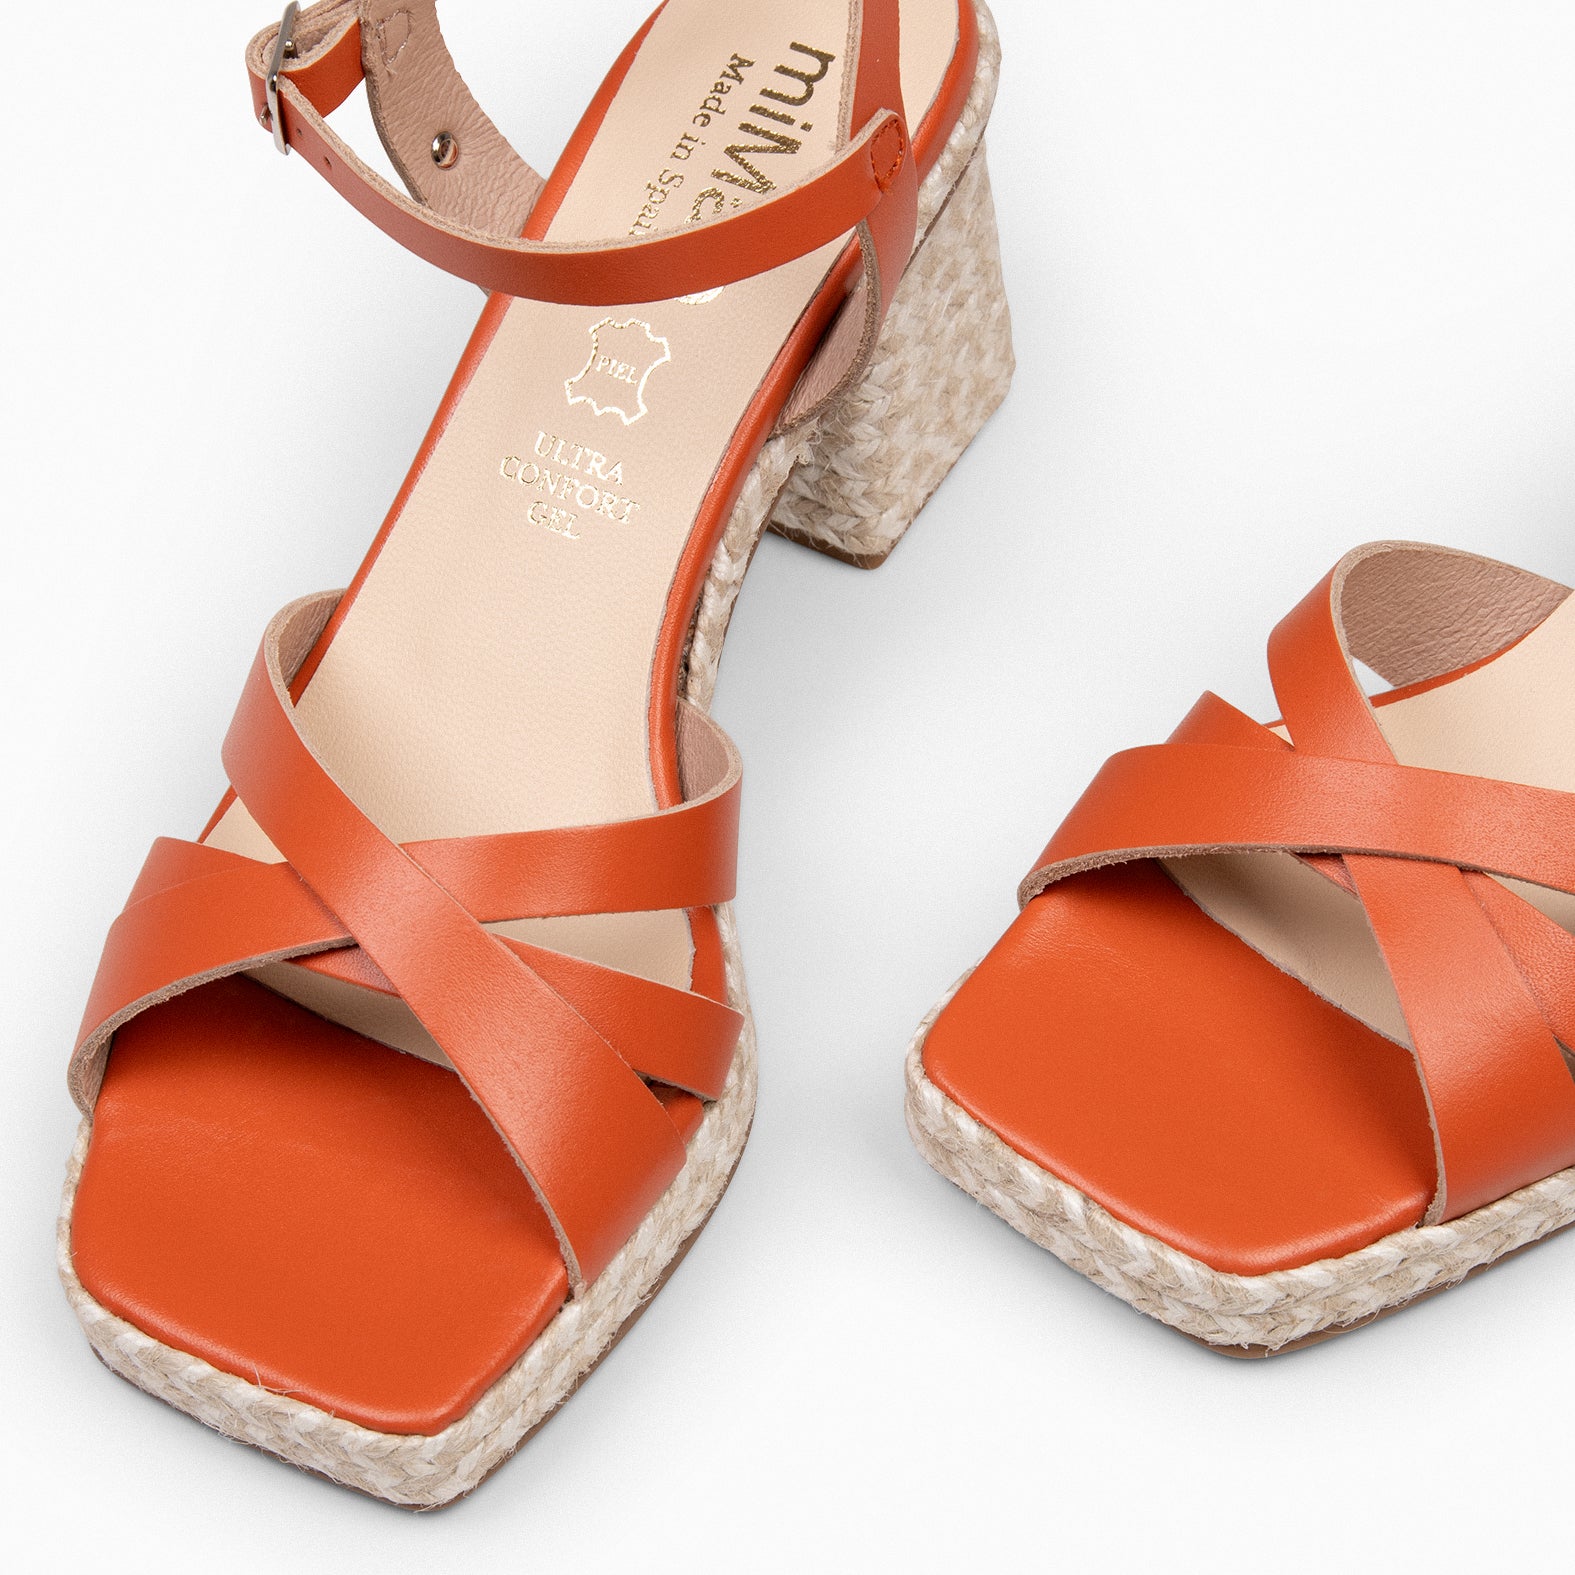 ANNA - ORANGE Sandals with heel and platform